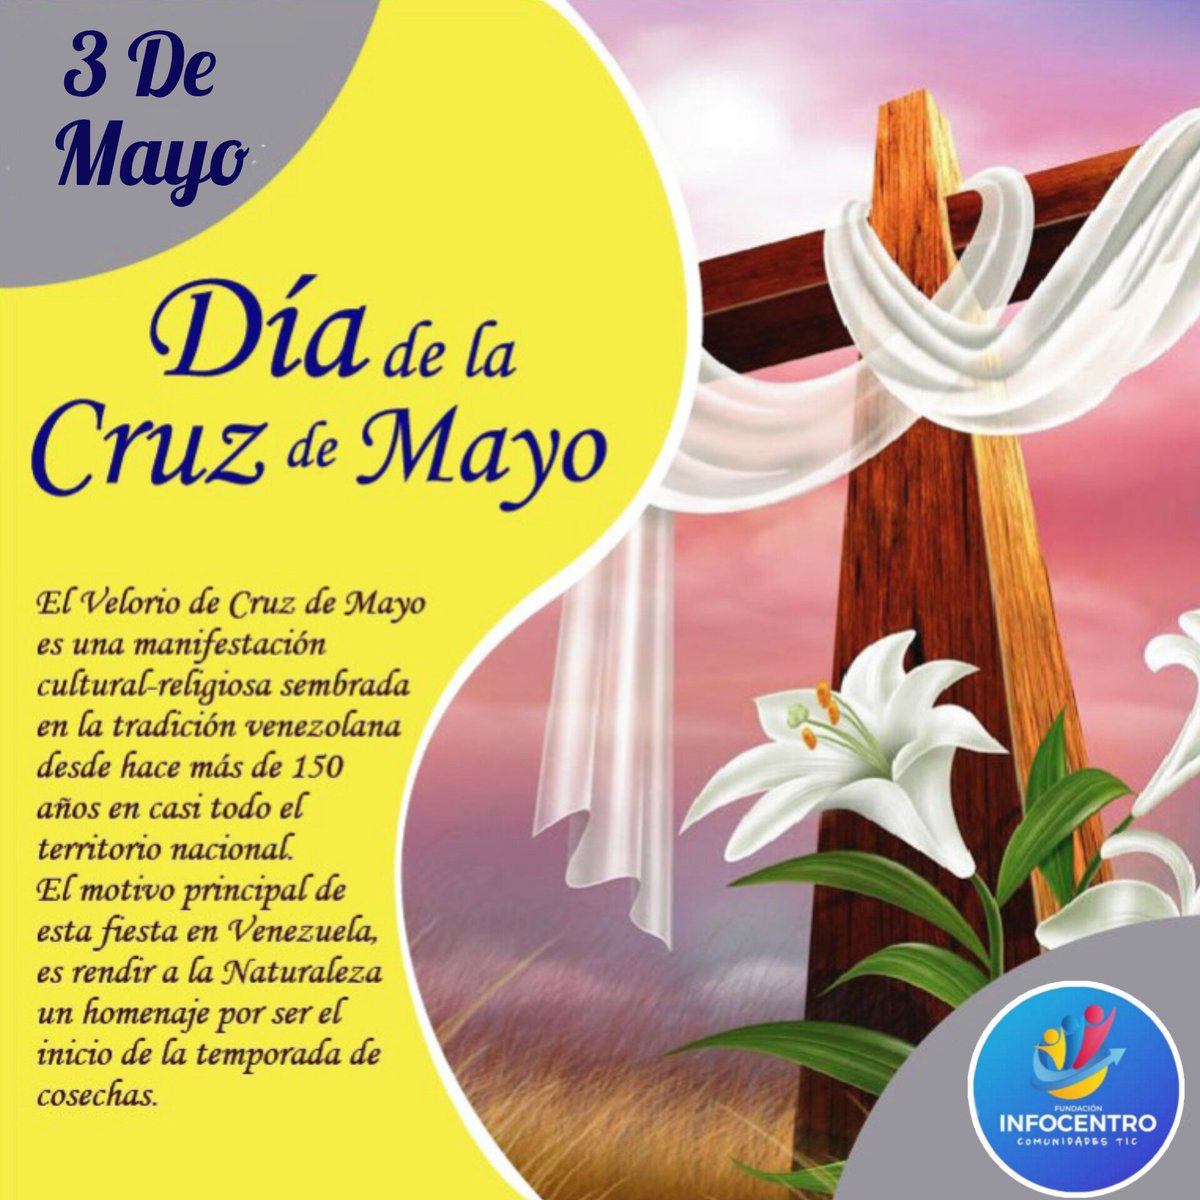 #3May celebramos la fiesta de la Cruz de Mayo, una tradición cultural y religiosa que rinde homenaje a la naturaleza. @InfoRedSucre @Suc20info @lasucrista @mantradilucas